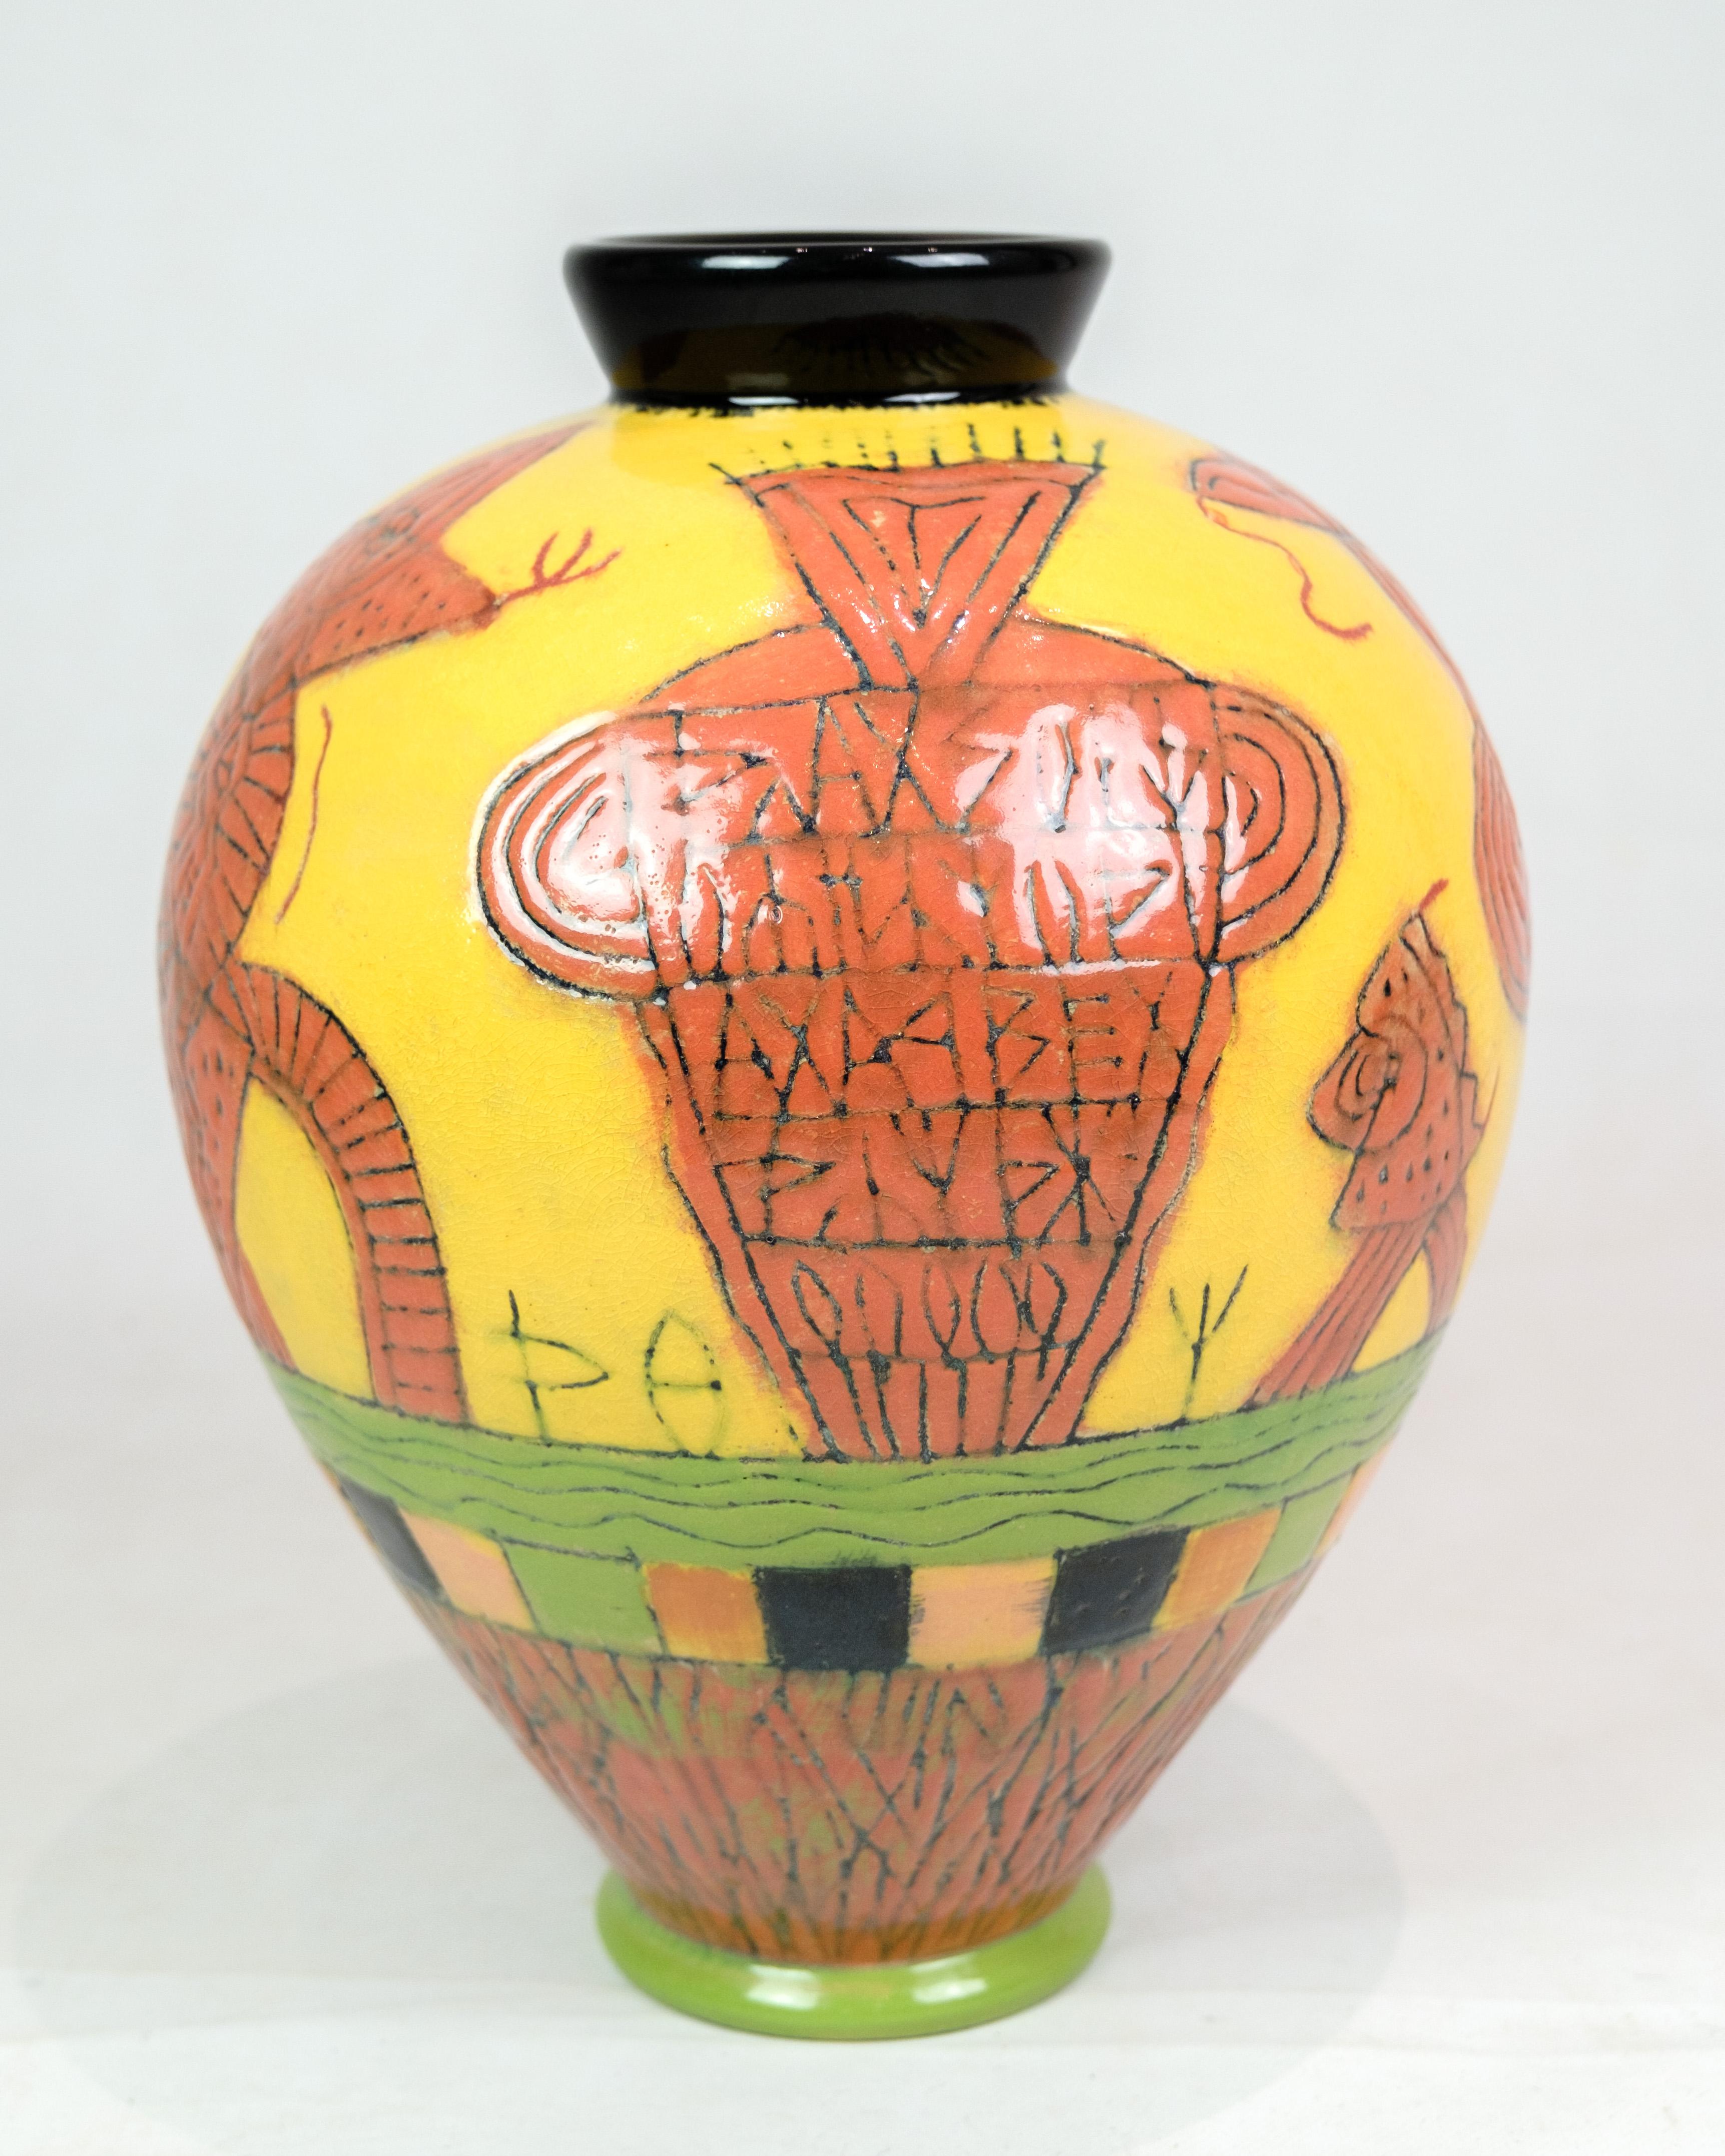 Die von Lene Regius entworfene und handbemalte Vase mit gelber, orangefarbener und grüner Glasur ist ein Kunstwerk, das den Stempel individueller Handwerkskunst und einzigartigen Designs trägt. Die Unterschrift von Lene Regius verleiht dem Werk eine